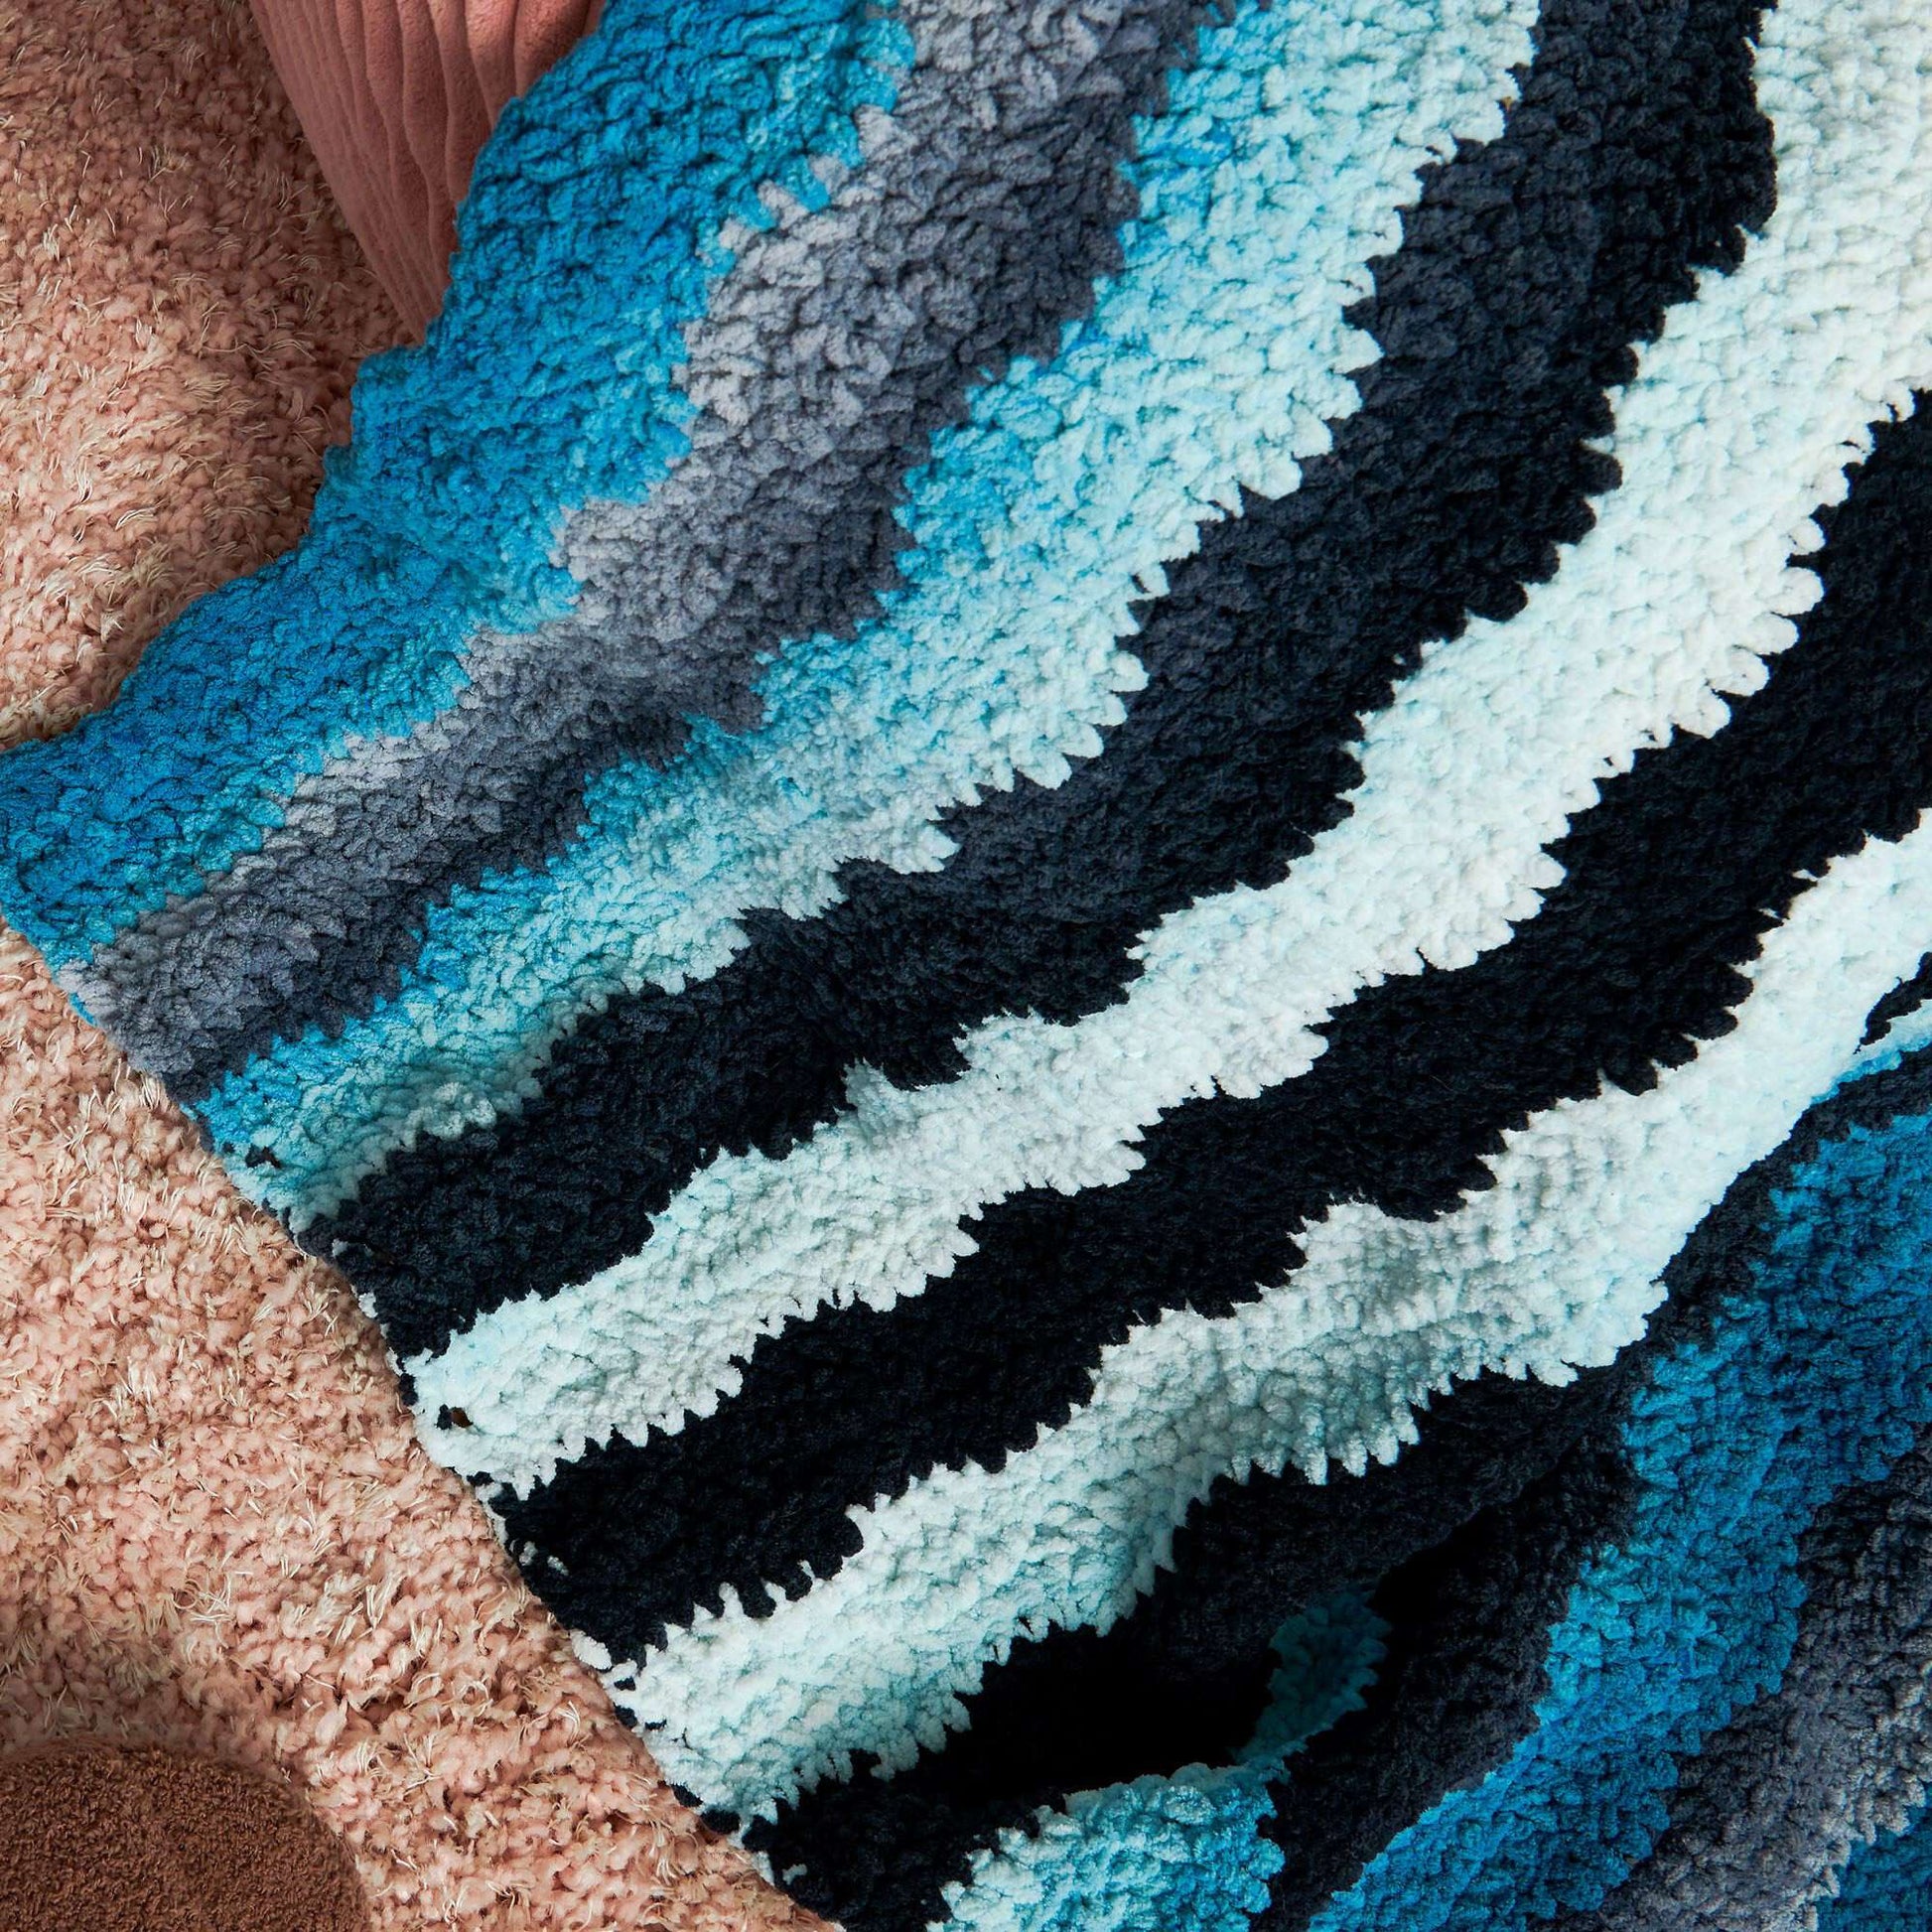 Free Bernat Waving Stripes Crochet Blanket Pattern